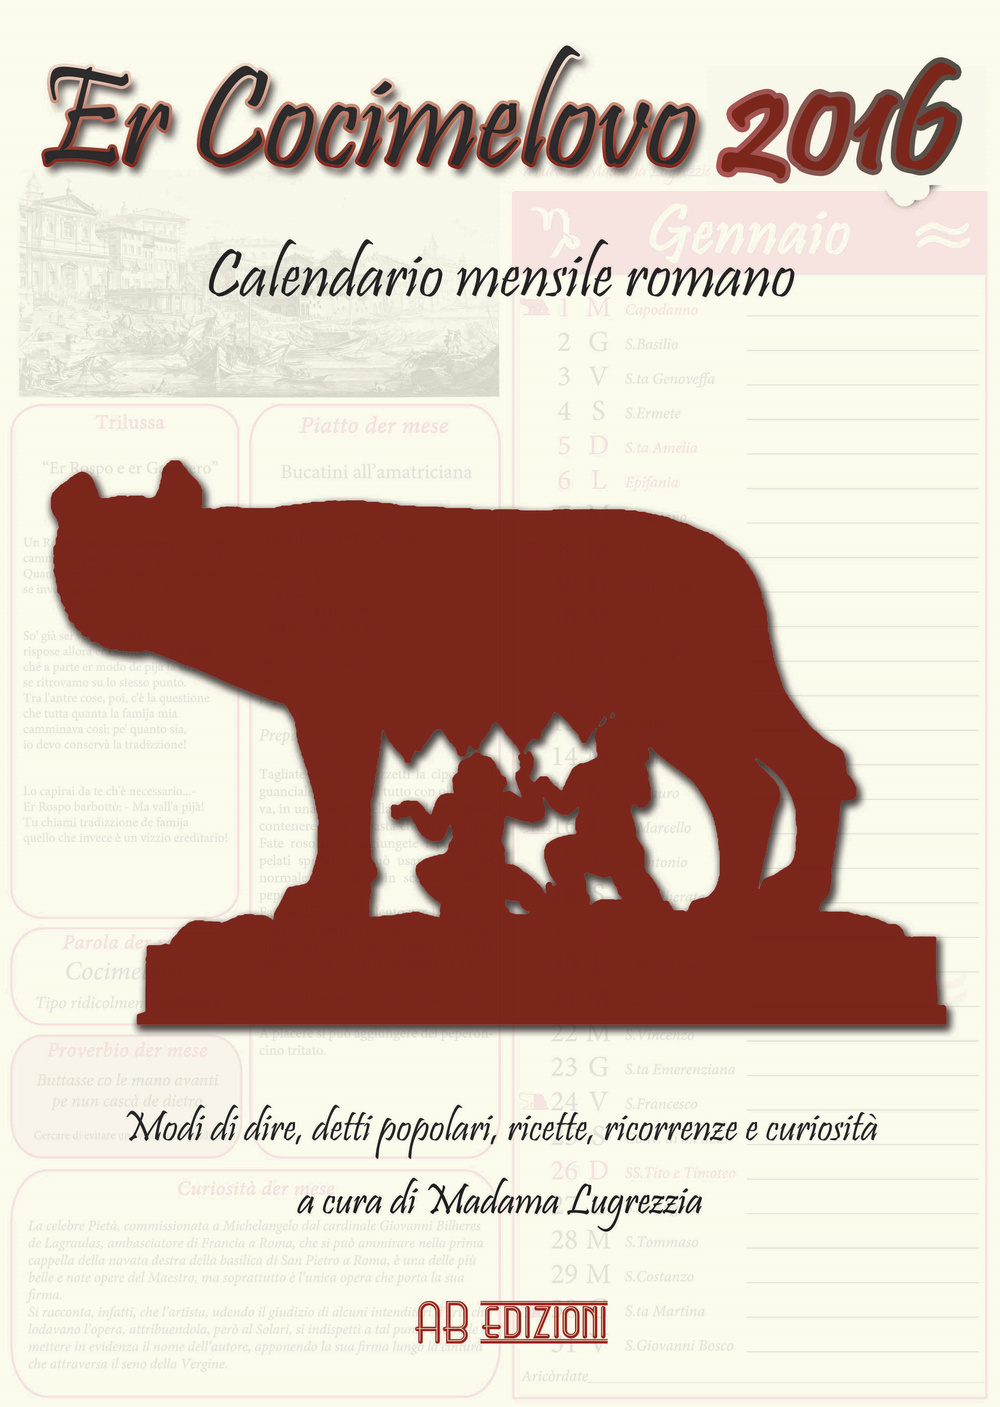 Cocimelovo 2016. Calendario mensile romano (Er)